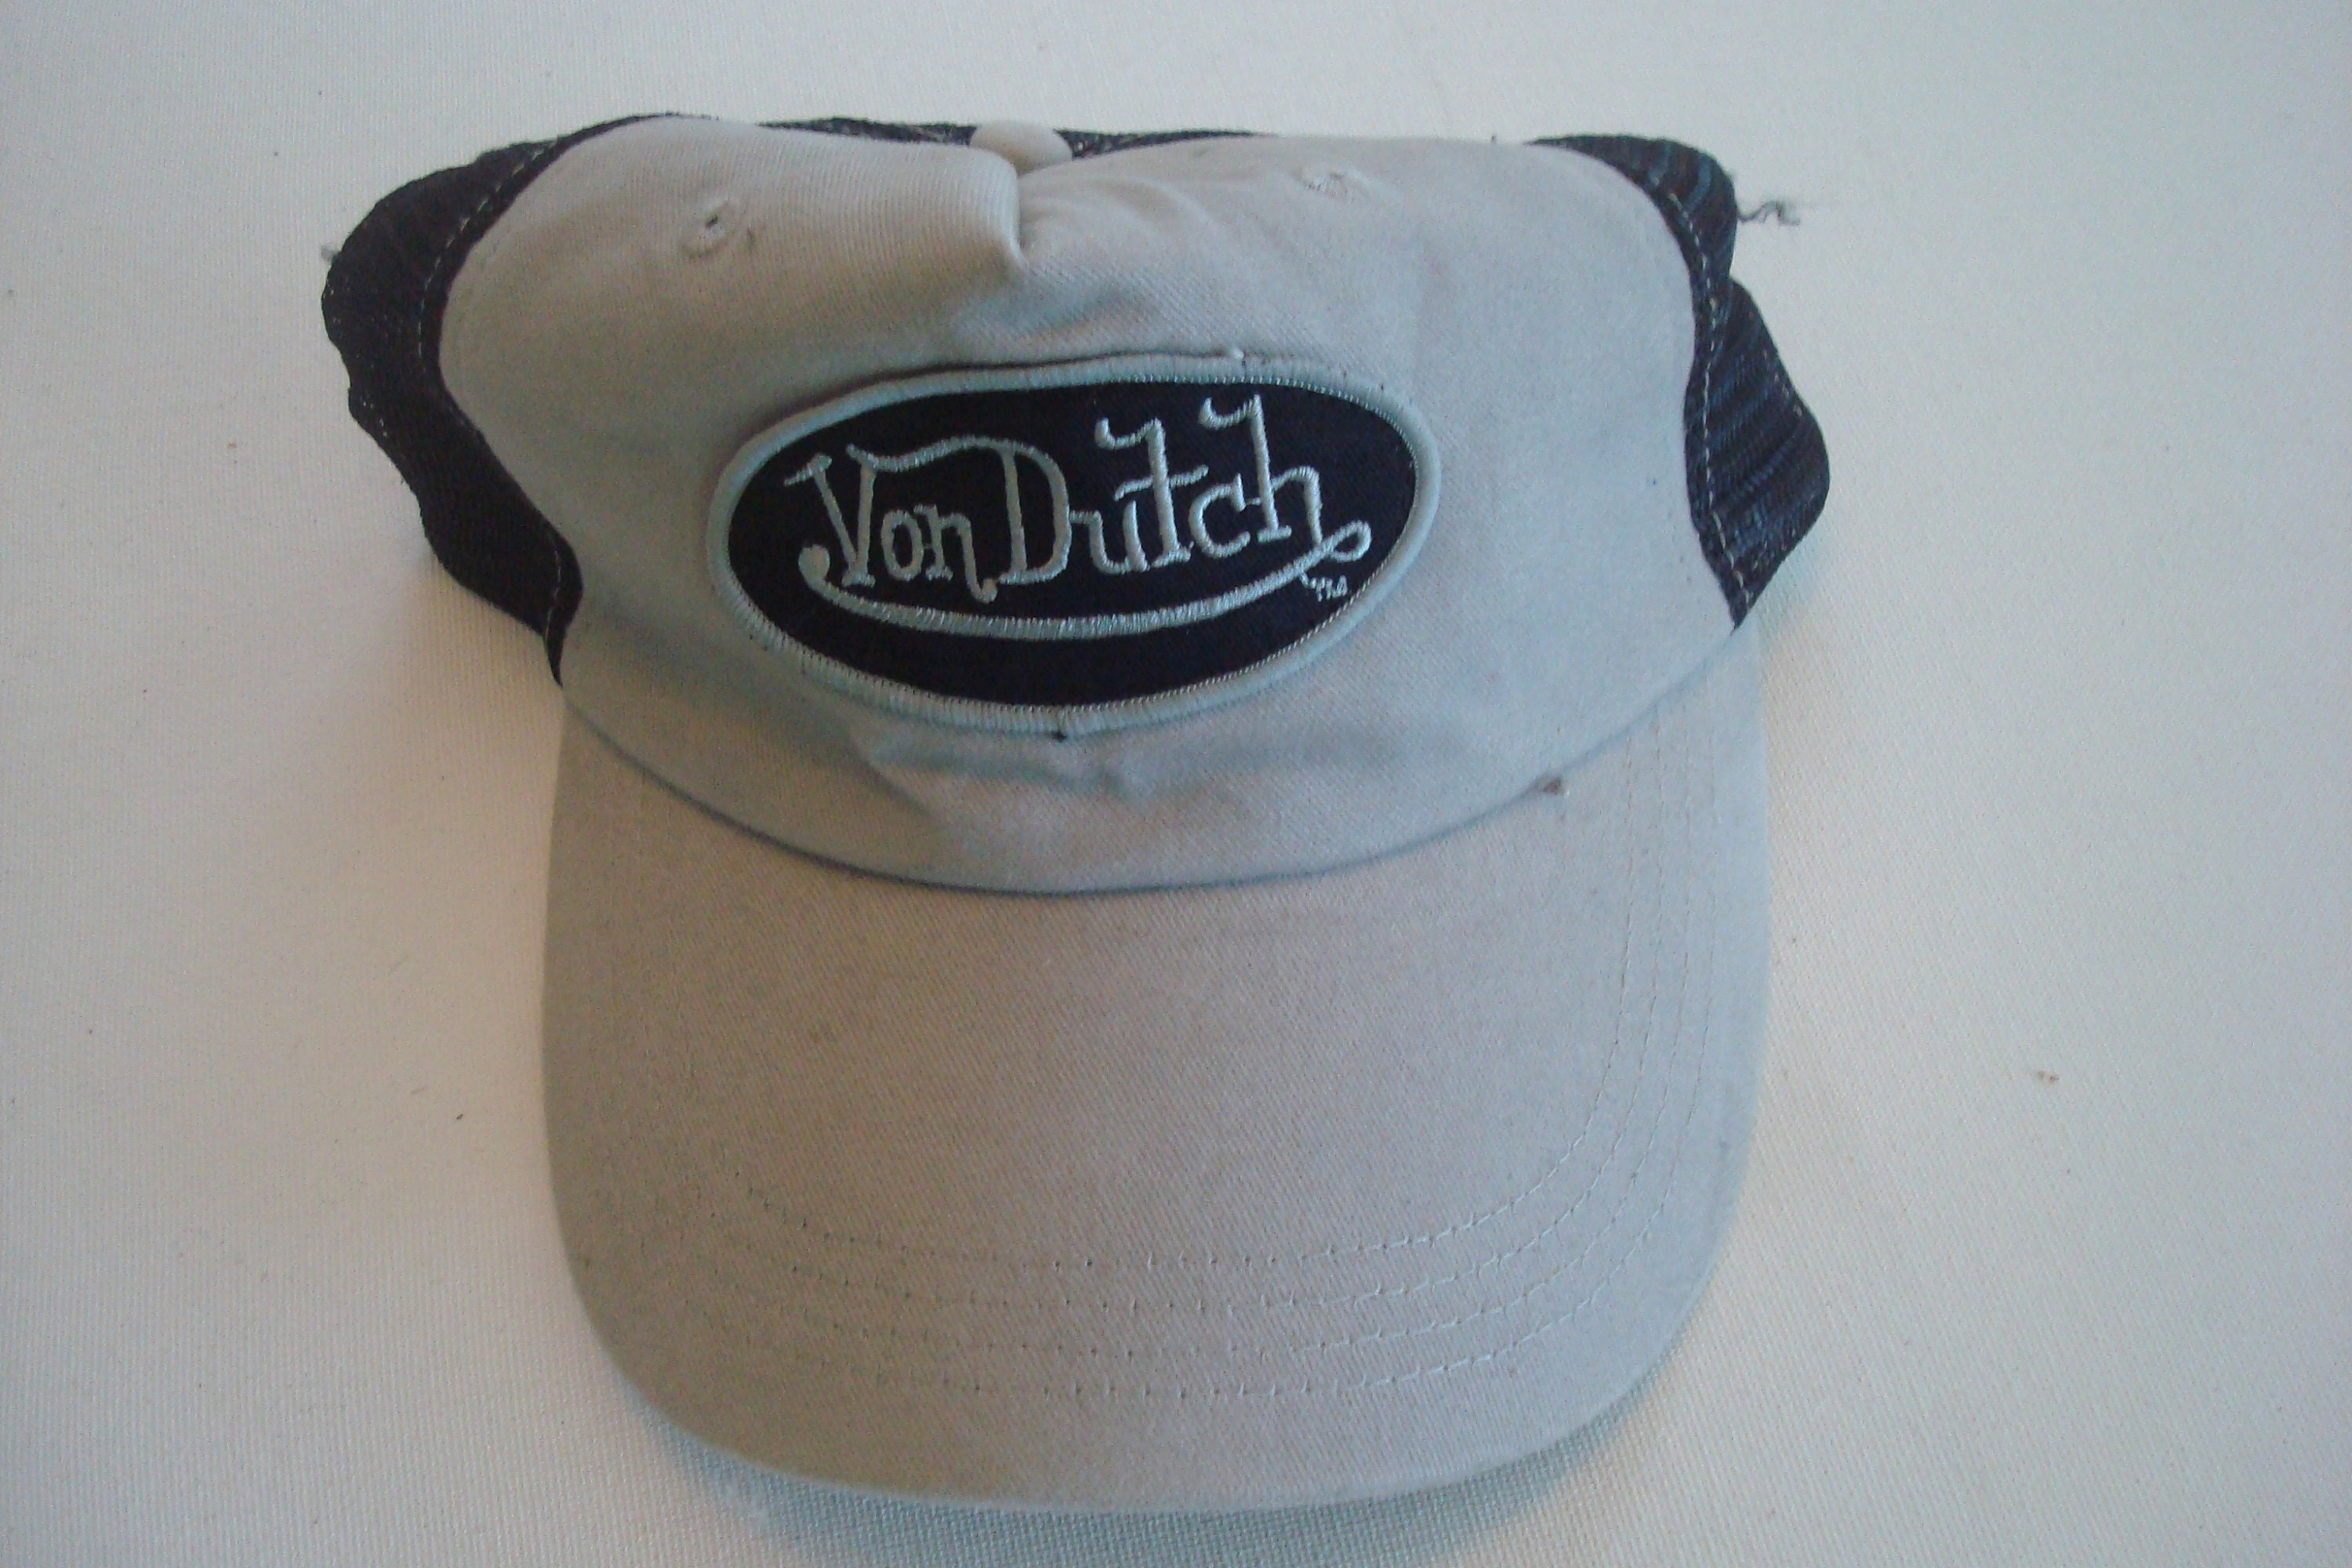 VON DUTCH Originals Trucker Cap Cotton Twill - Boston Baseball Cap Hat Mesh